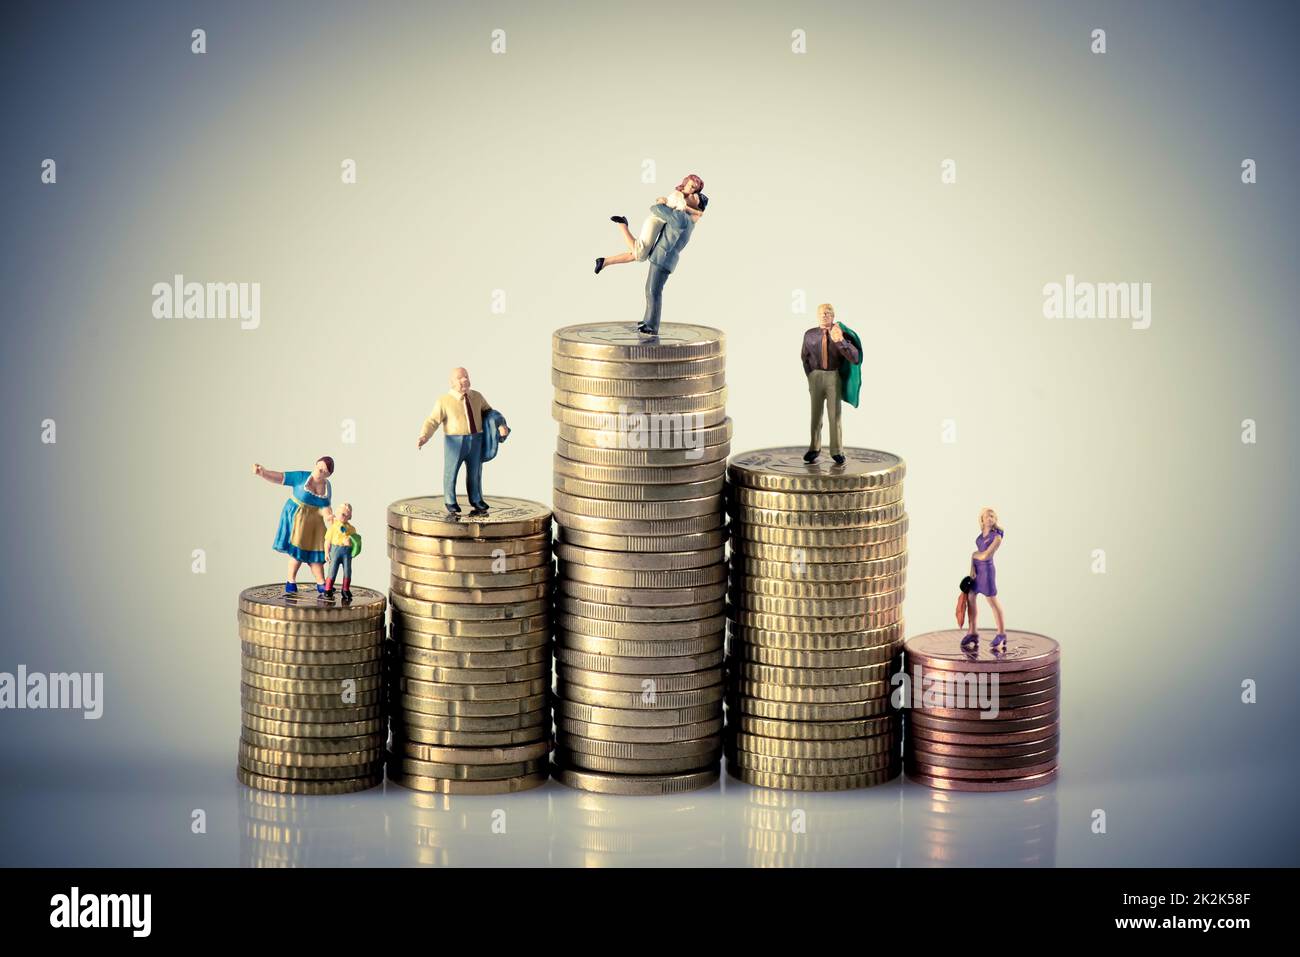 Das Konzept des "Faily Budget". Miniaturfamilie auf dem Münzstapel. Stockfoto